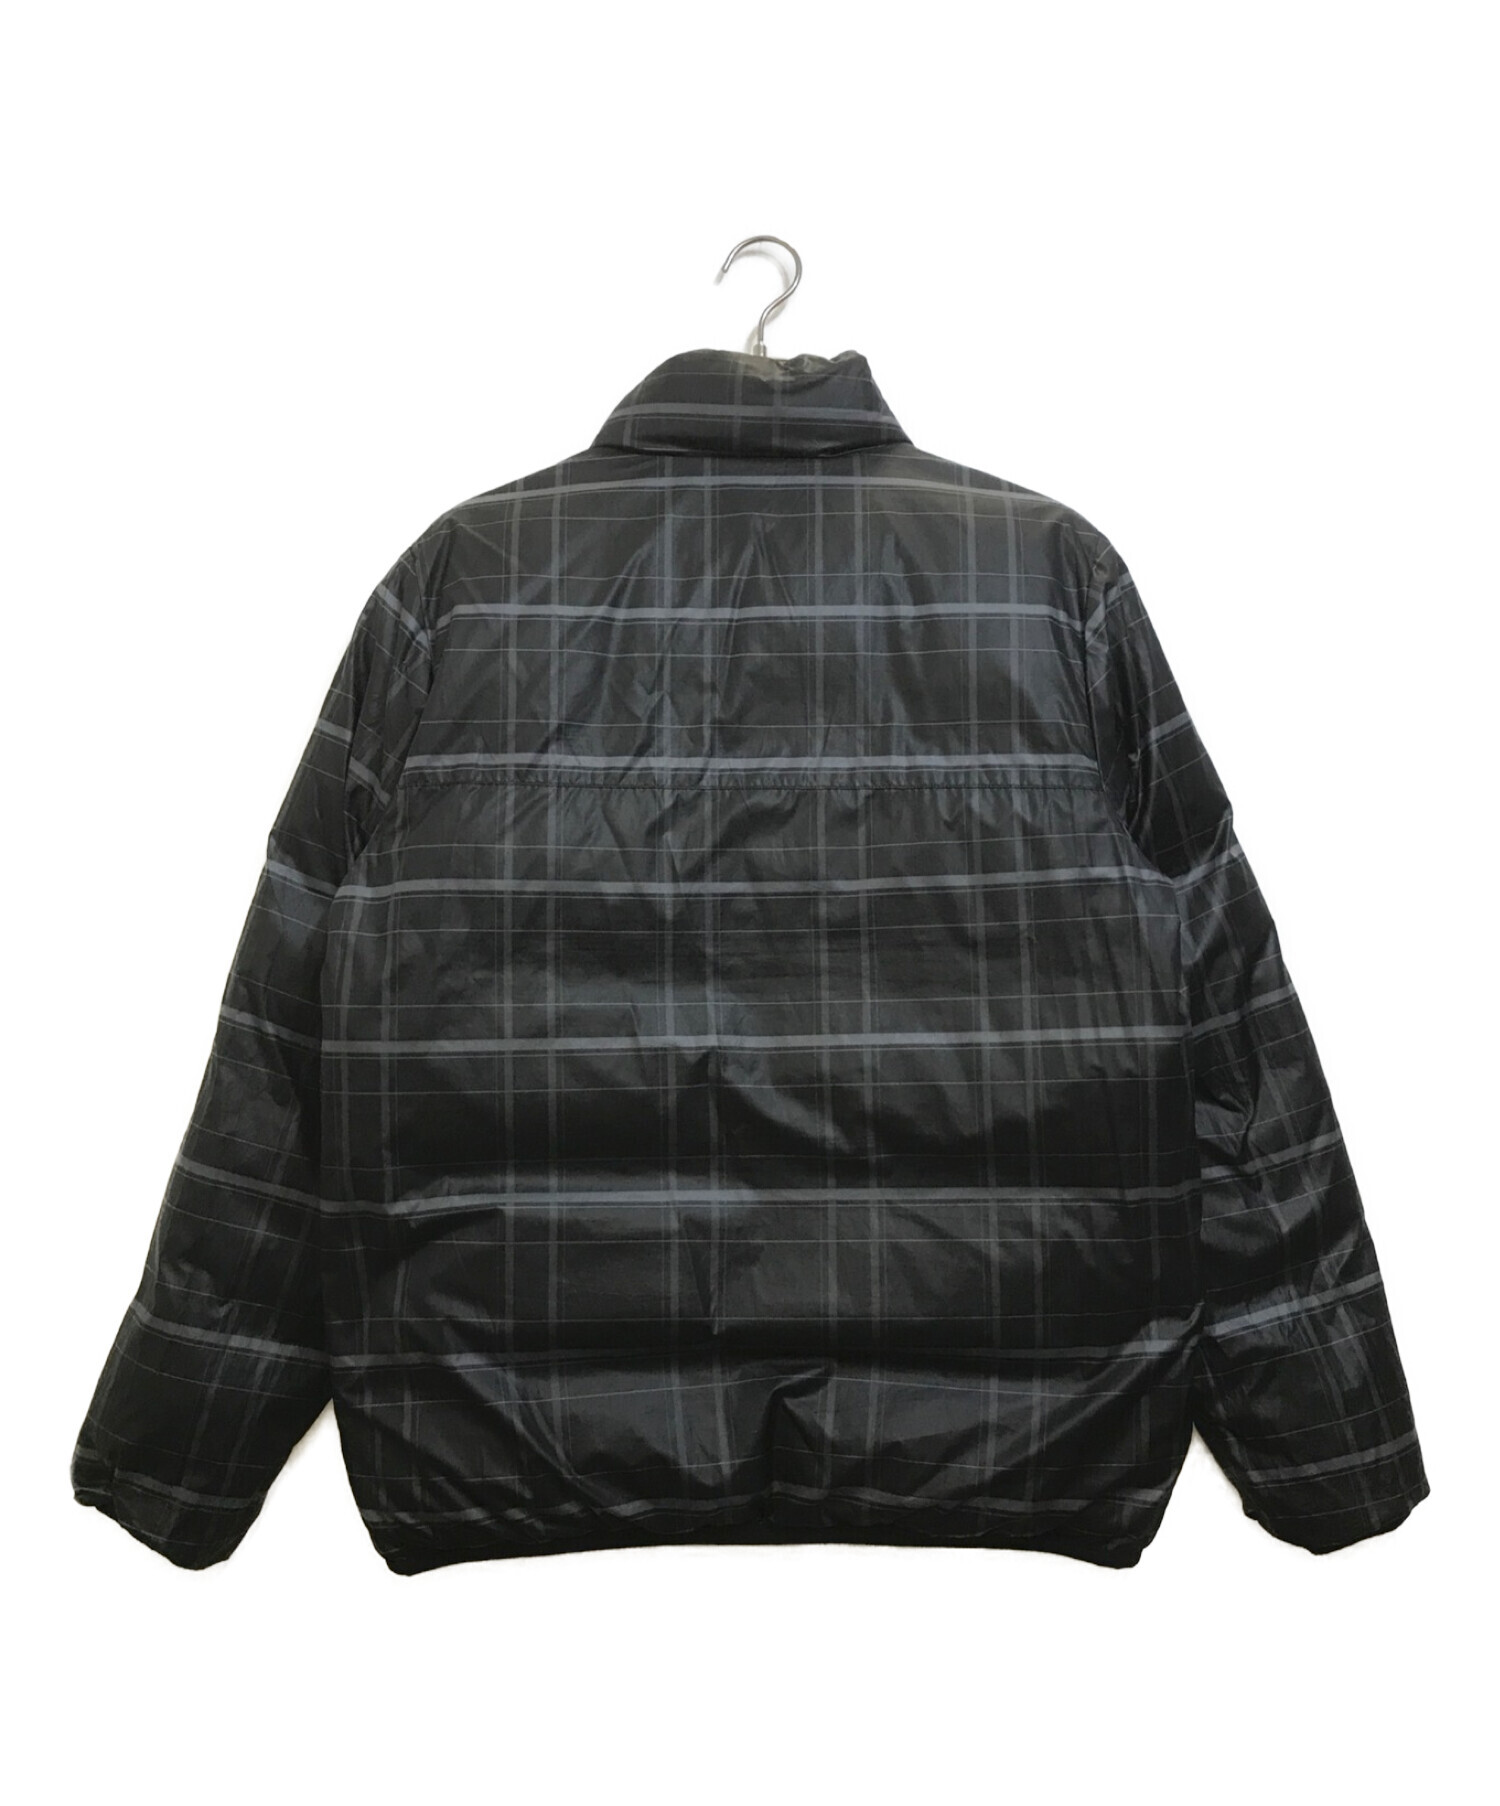 NIKE (ナイキ) リバーシブルダウンジャケット ブラック サイズ:M